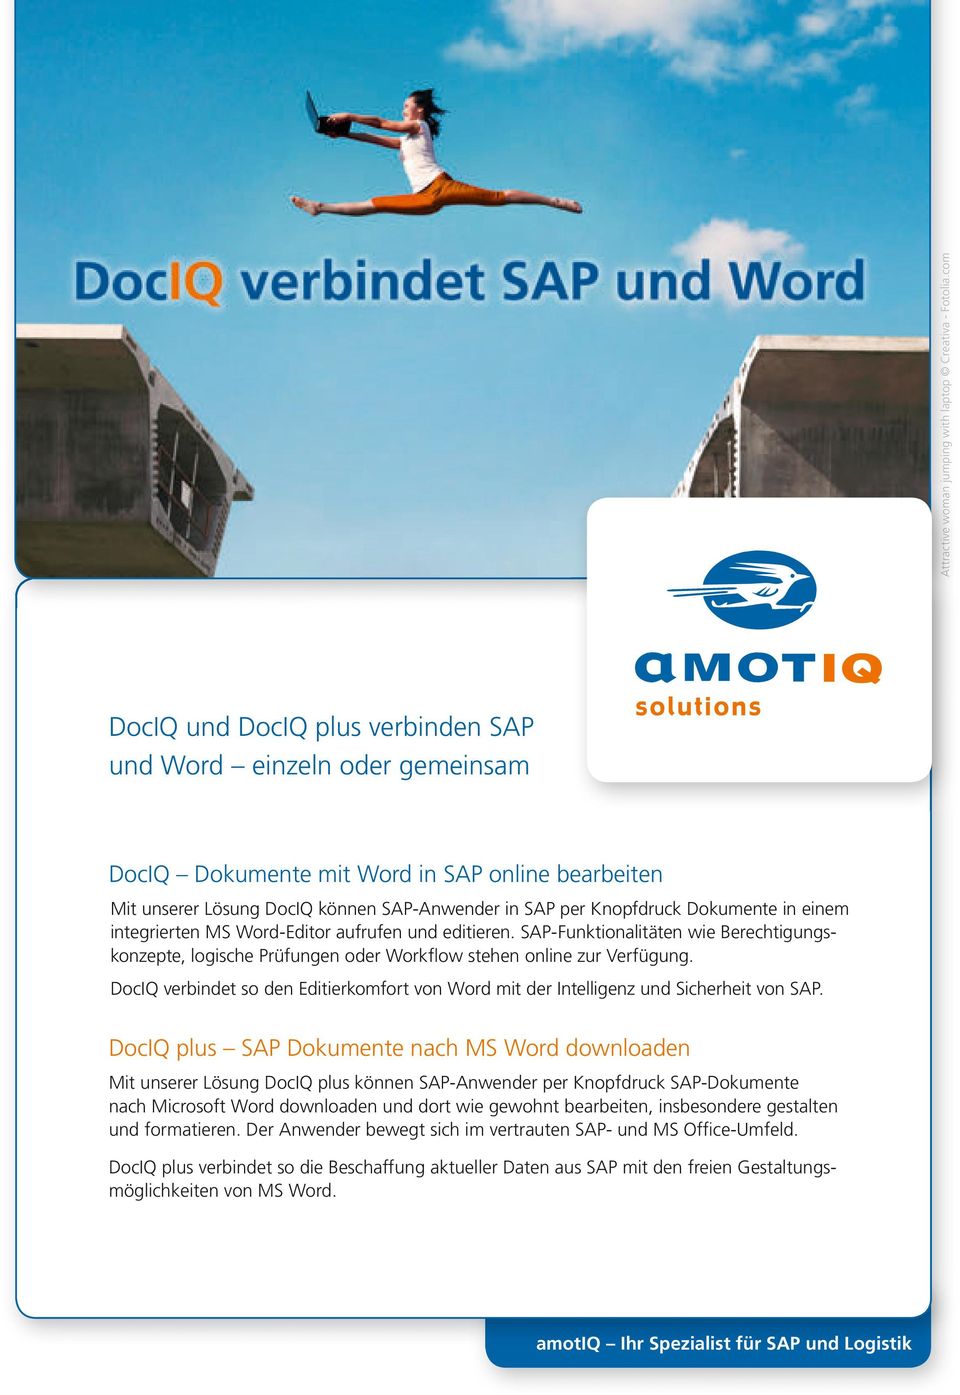 verbindet so den Editierkomfort von Word mit der Intelligenz und Sicherheit von SAP plus SAP Dokumente nach MS Word downloaden Mit unserer Lösung plus können SAP-Anwender per Knopfdruck SAP-Dokumente